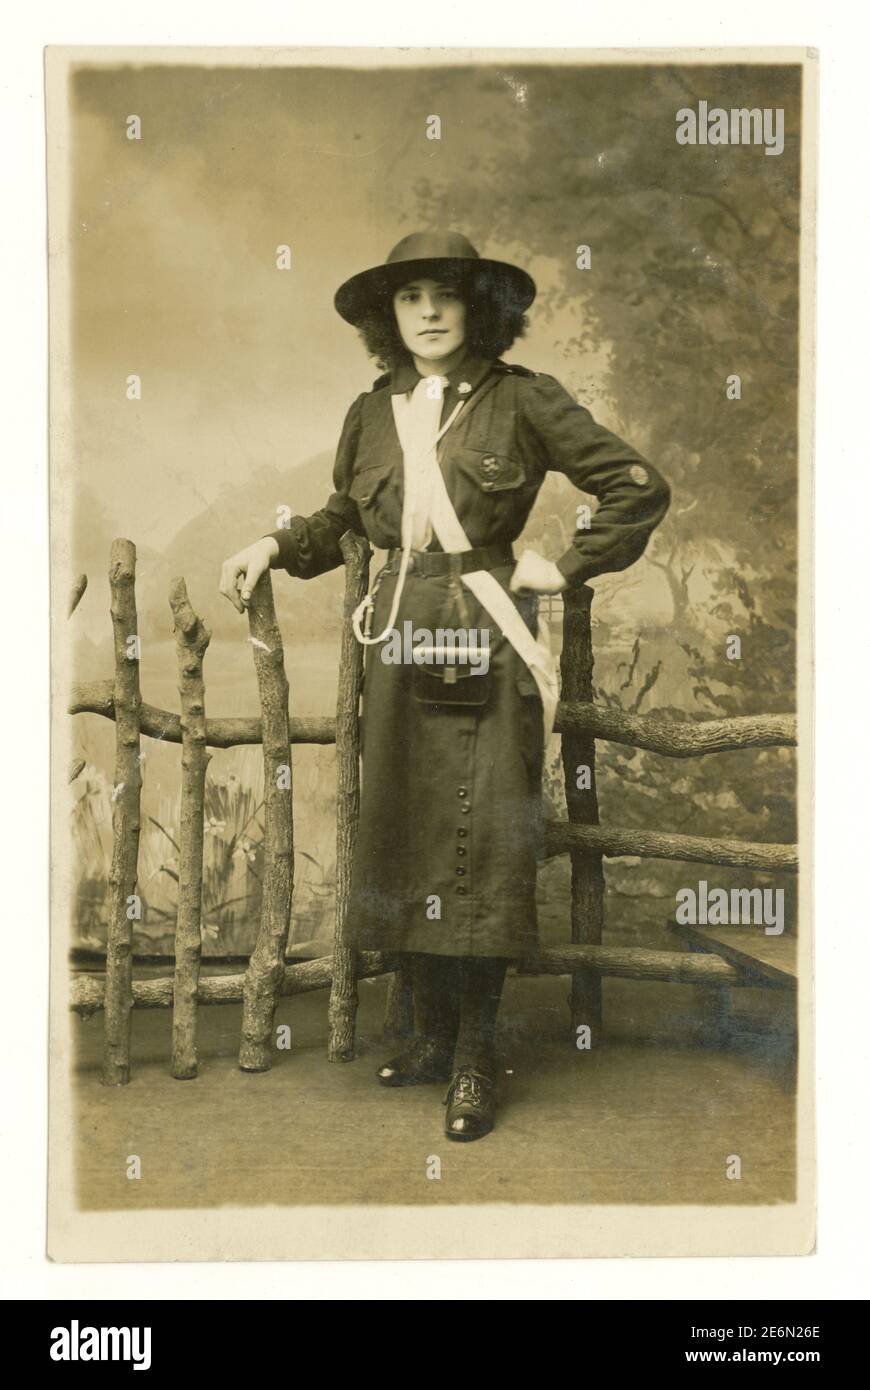 Carte postale originale de l'époque de la première Guerre mondiale d'un guide de jeune fille attrayant en uniforme avec badges, chapeau, sifflet et foulard, de Rochdale dans le Grand Manchester, Angleterre, U.K, vers 1918 Banque D'Images